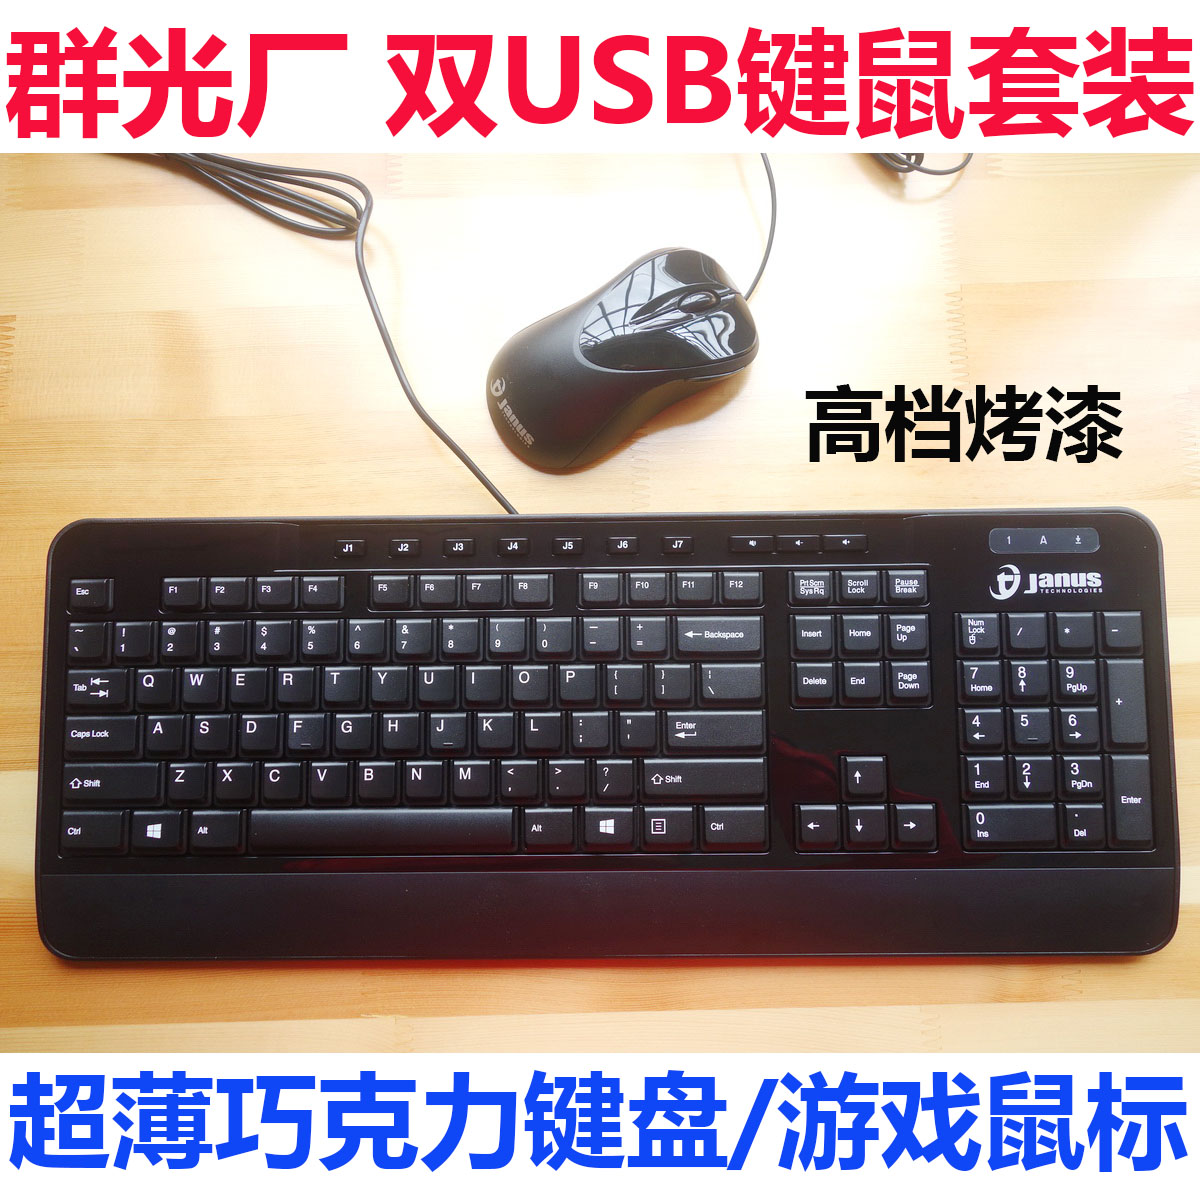 群光 高档烤漆有线USB巧克力键盘鼠标 键鼠套装 台式机笔记本通用